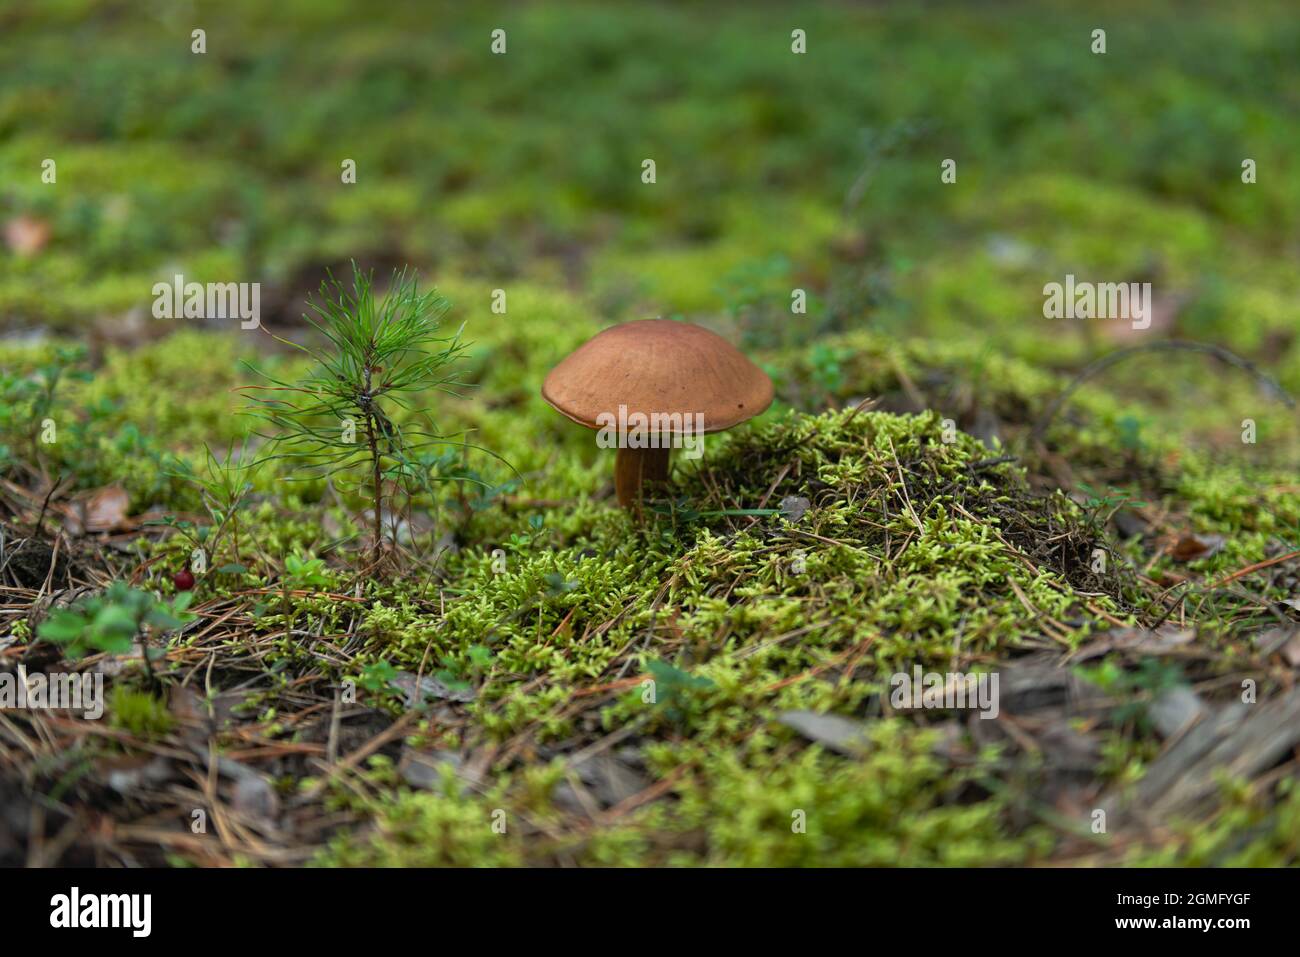 Ein Kiefernwald, ein moosbedeckter Boden mit Nadeln darauf. Auf dem Substrat wächst ein Pilz, ein Boletus. Stockfoto